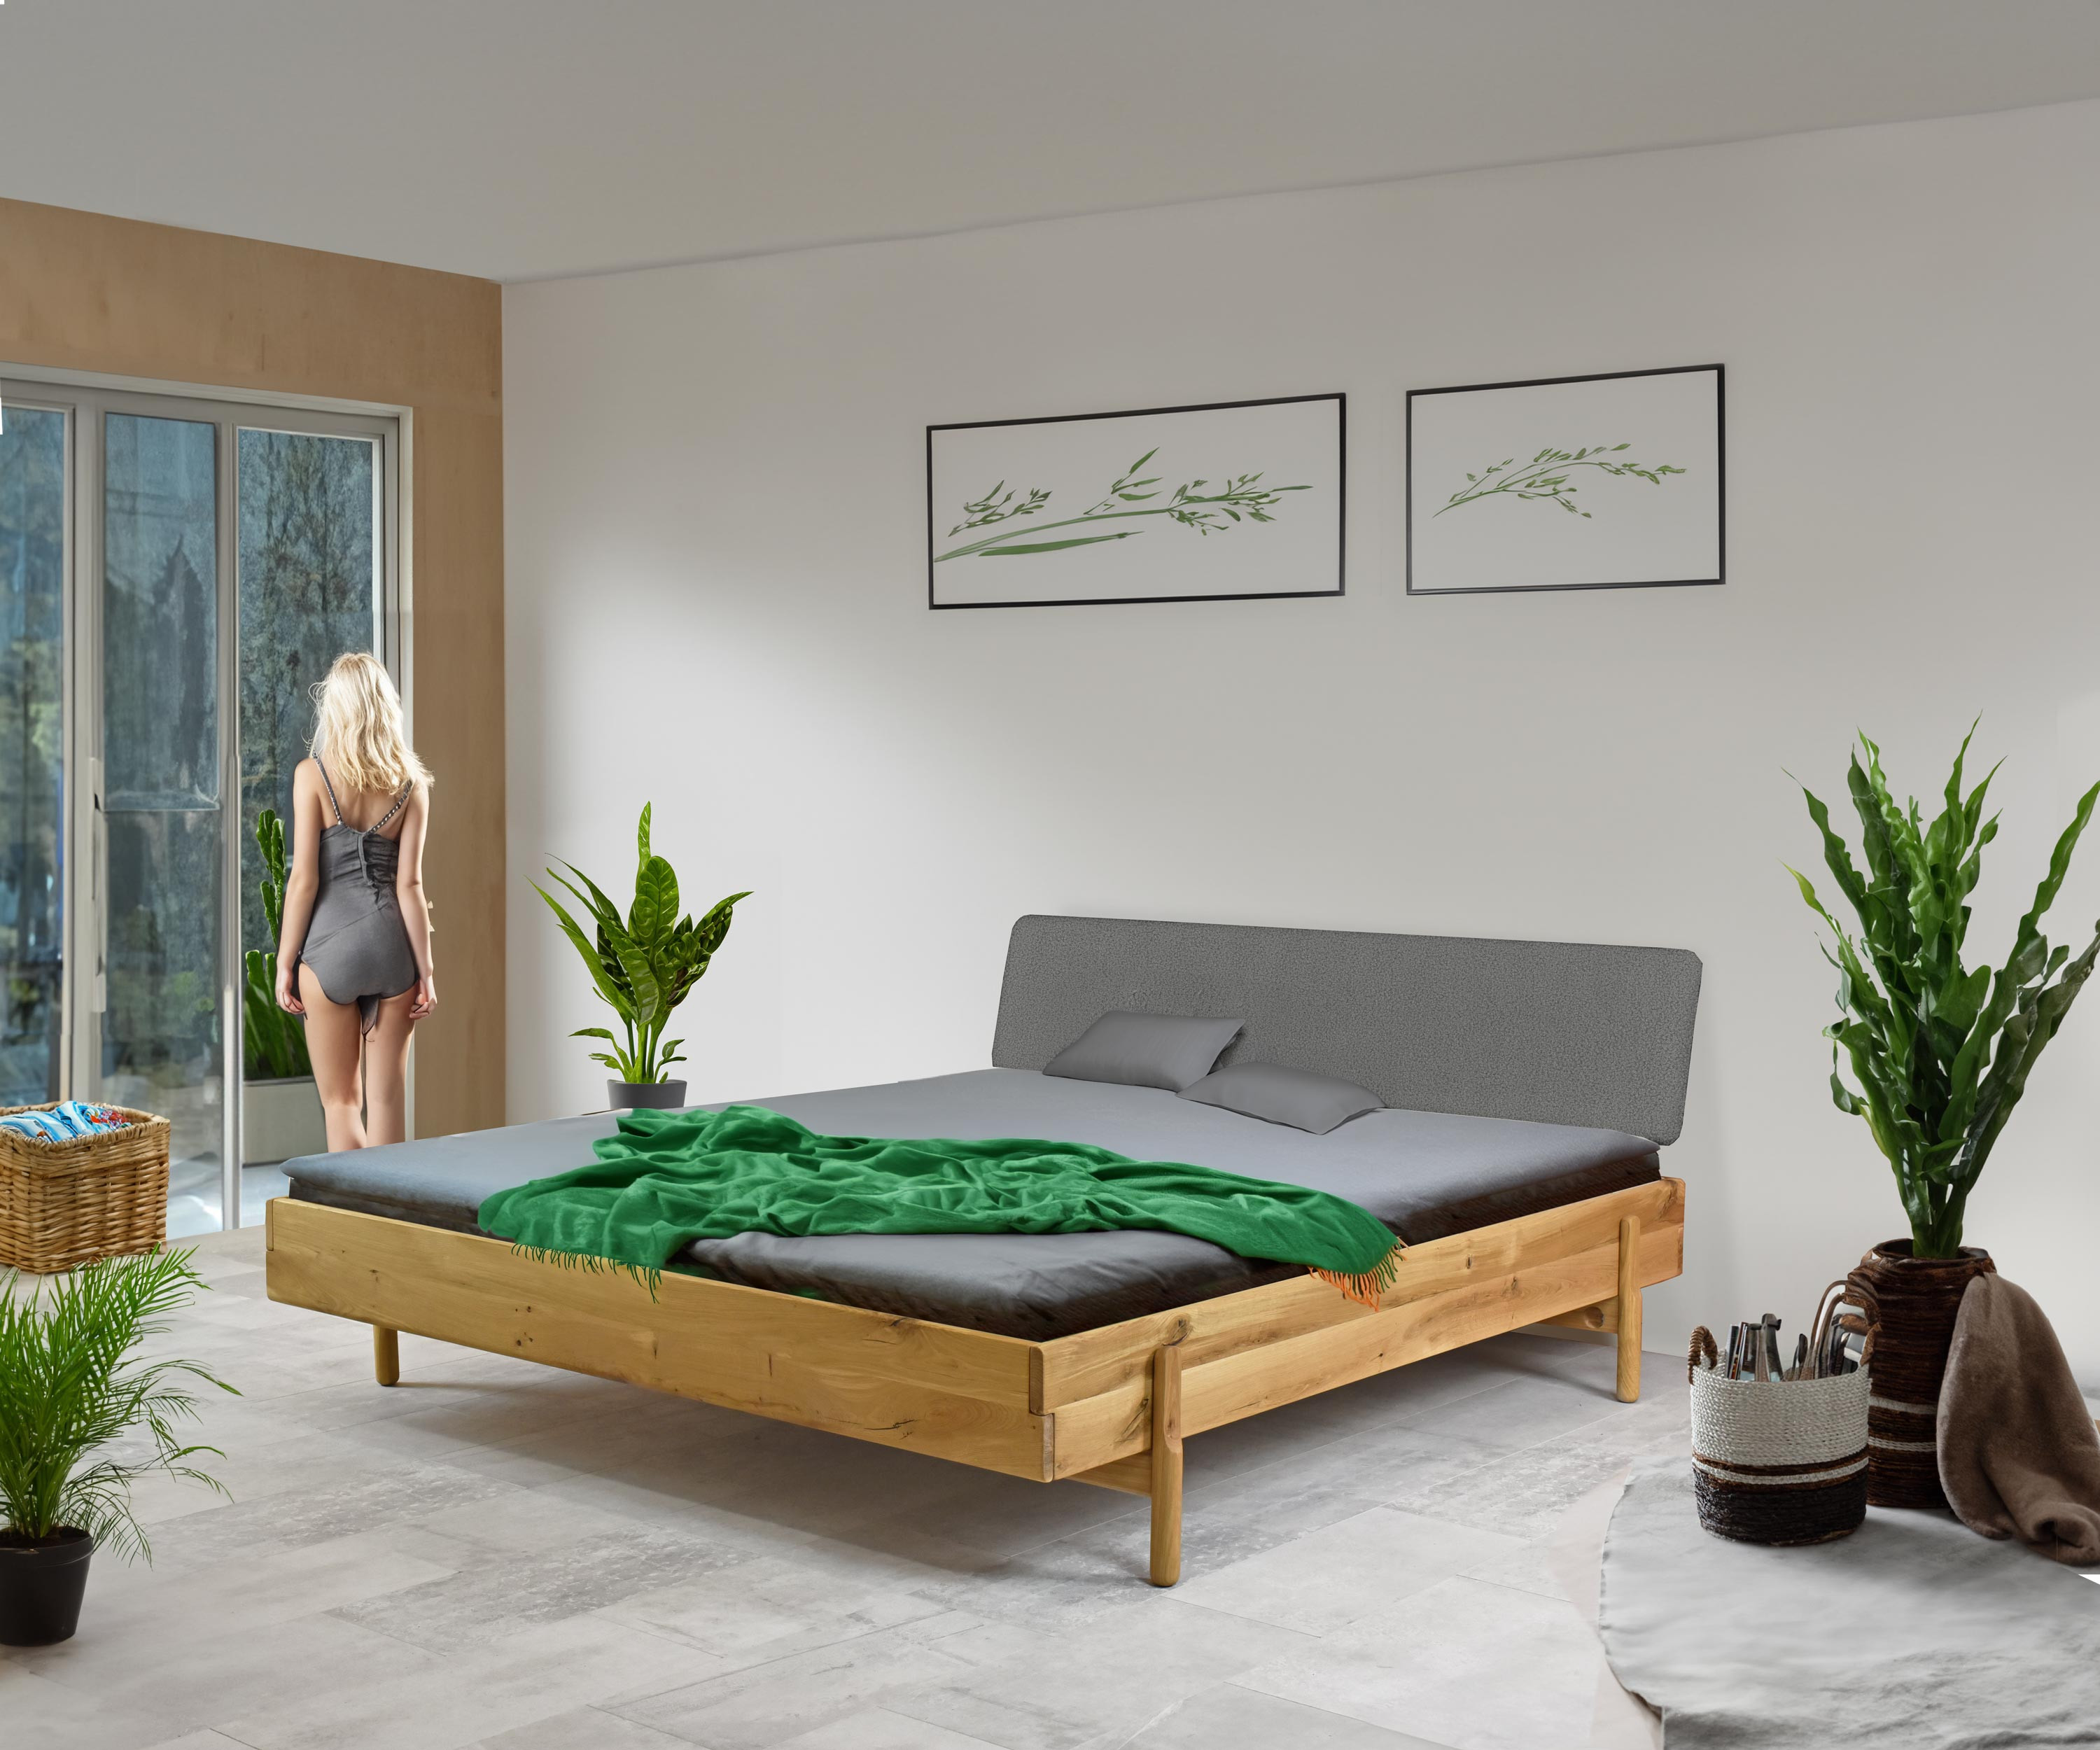 Dubová postel ve skandinávském stylu na nožičkách 180 x 200 cm